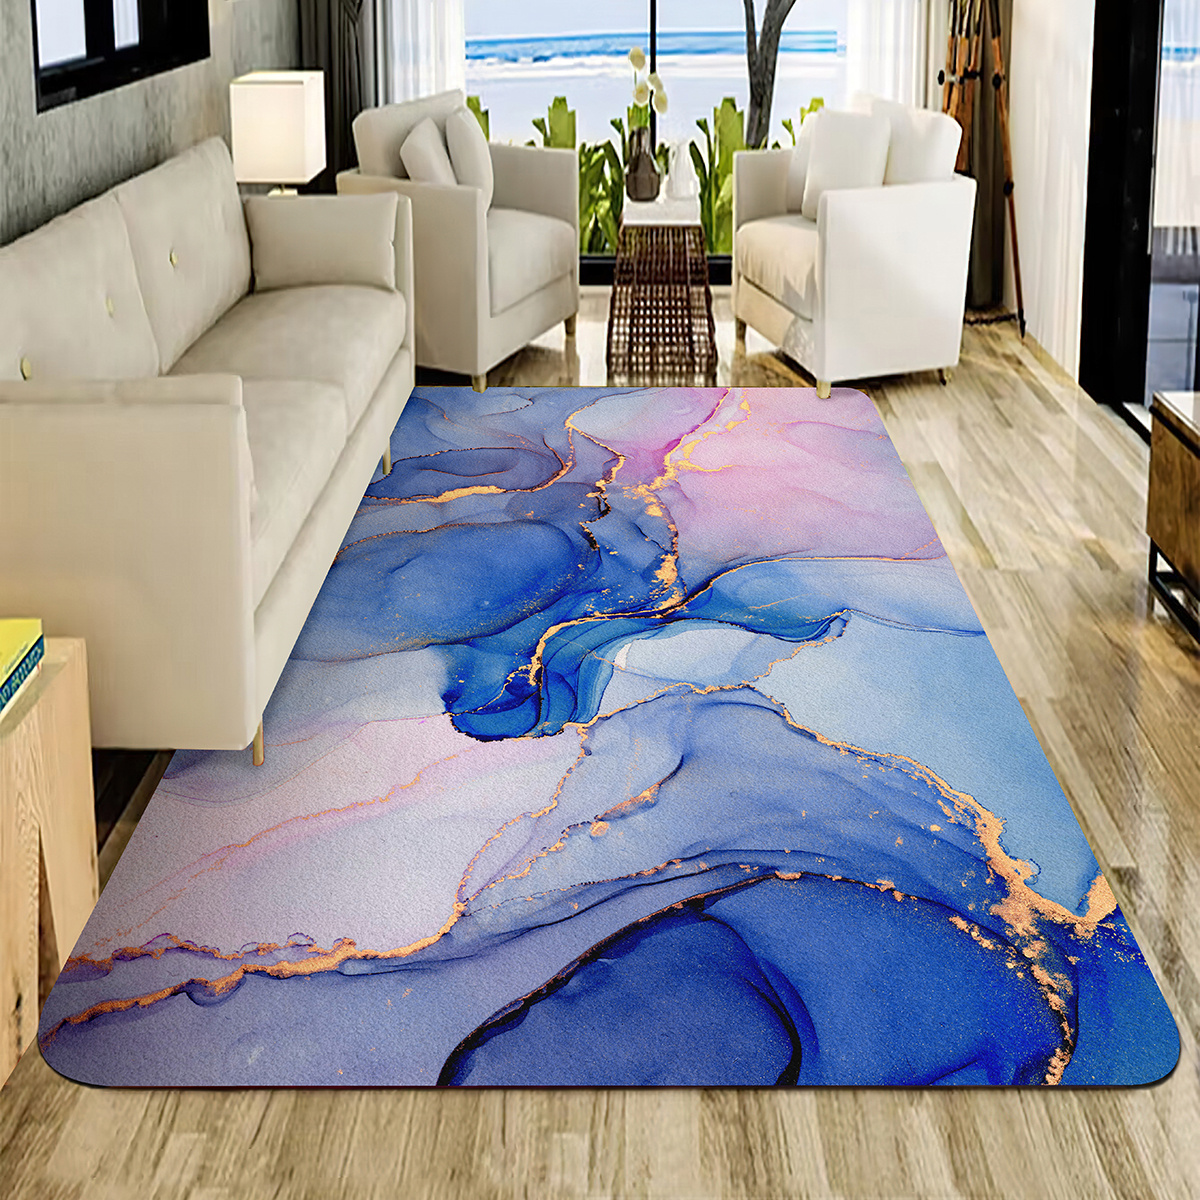  Color G - Tapetes para puertas interiores, alfombra para  entradas de 20 x 32 pulgadas, alfombras para el interior de la casa,  alfombra antideslizante y absorbente para puertas principales, alfombra para